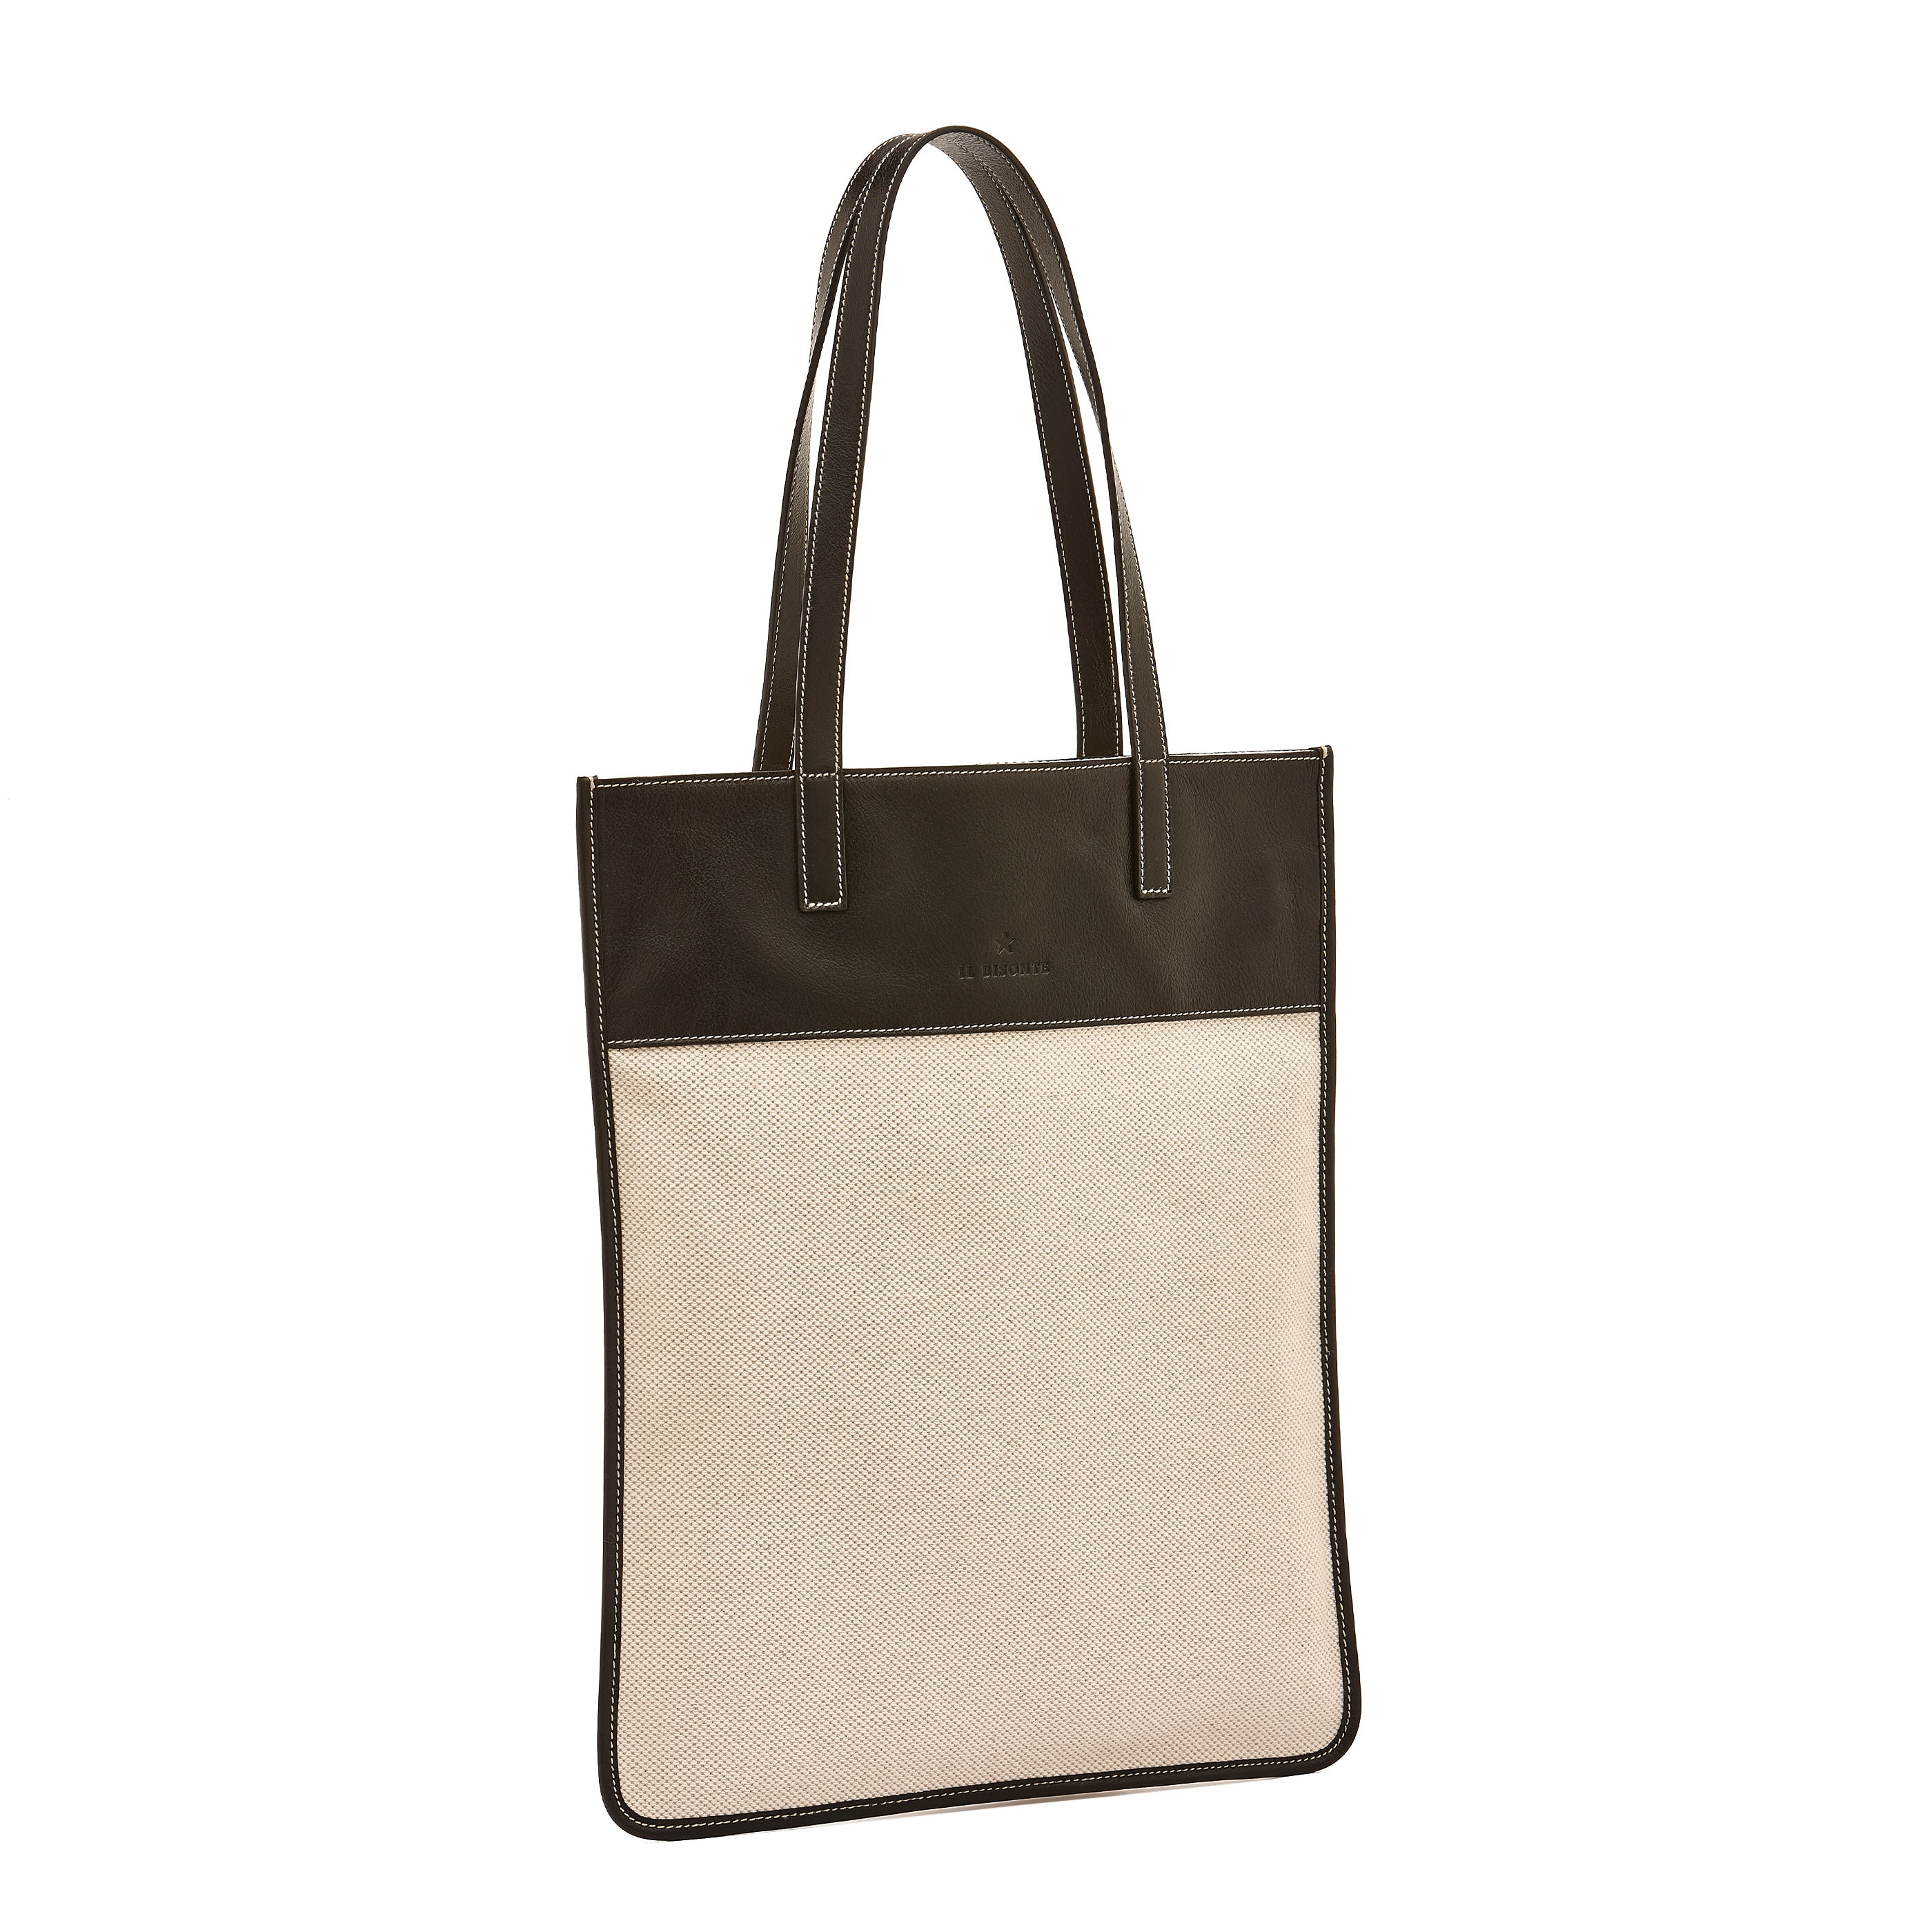 Marini | Women's tote bag in fabric color natural / black